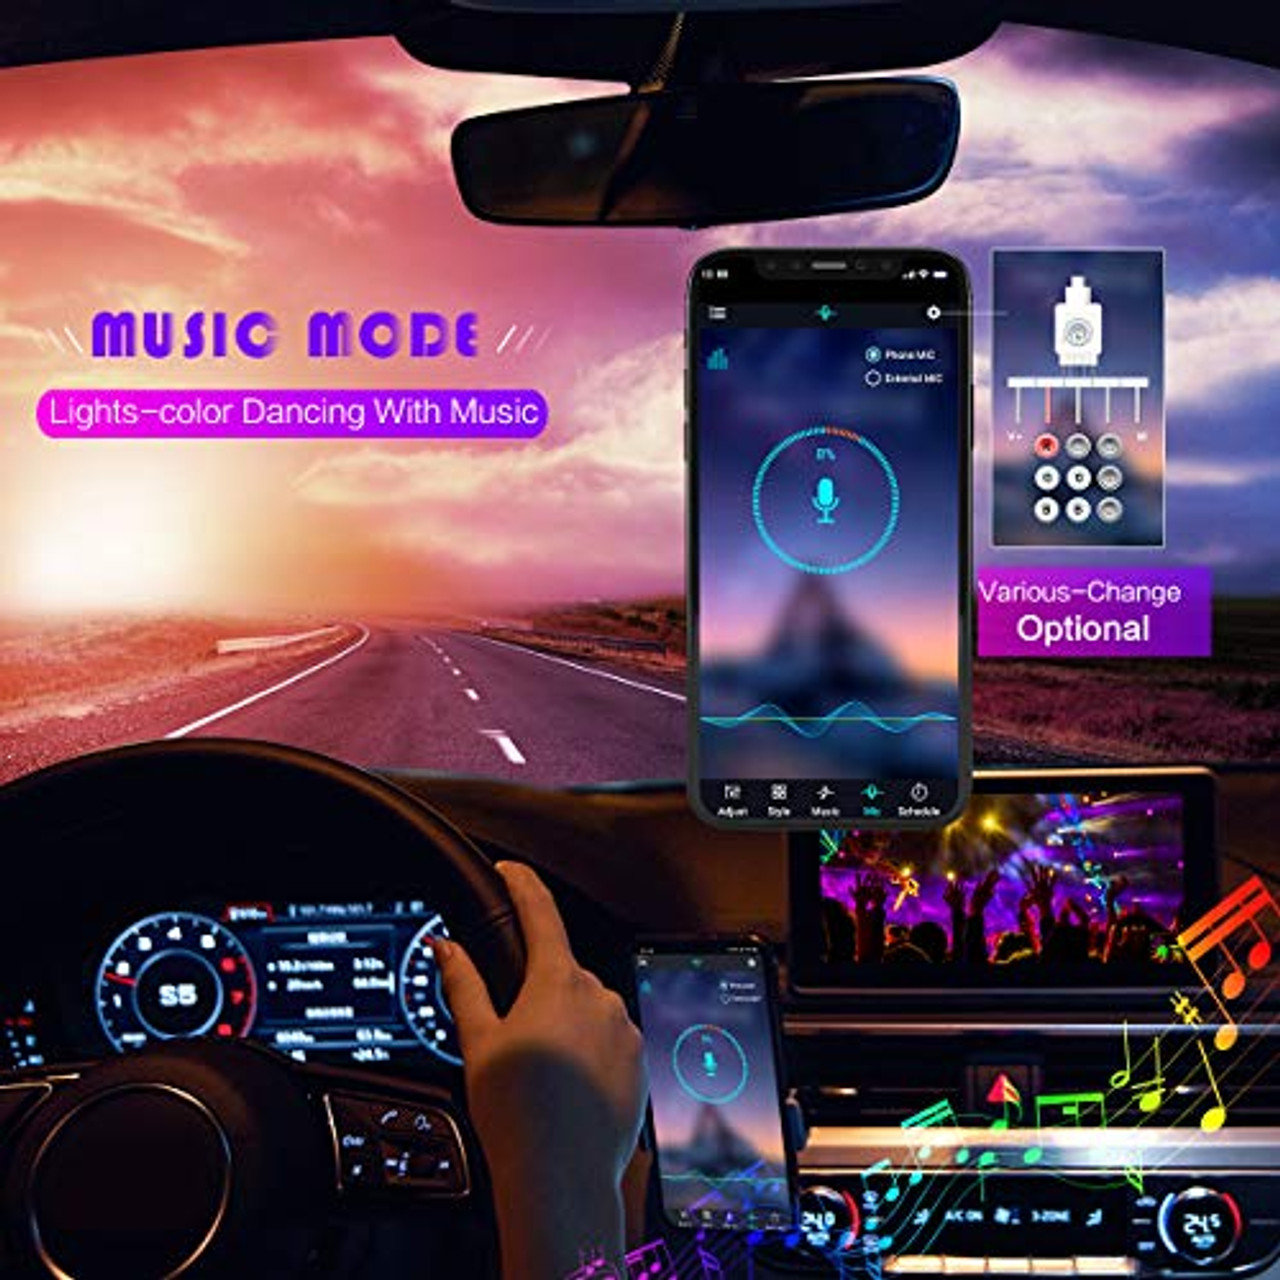 LED-Auto-Innenbeleuchtung, App-gesteuerte Auto-Innenbeleuchtung mit  USB-Anschluss, mehrfarbige Auto-LED-Innenbeleuchtung als Umgebungslicht,  Musik-Synchronisation, LED-Innenbeleuchtung für Autos mit  Sound-Aktiv-Funktion – OceanBargains